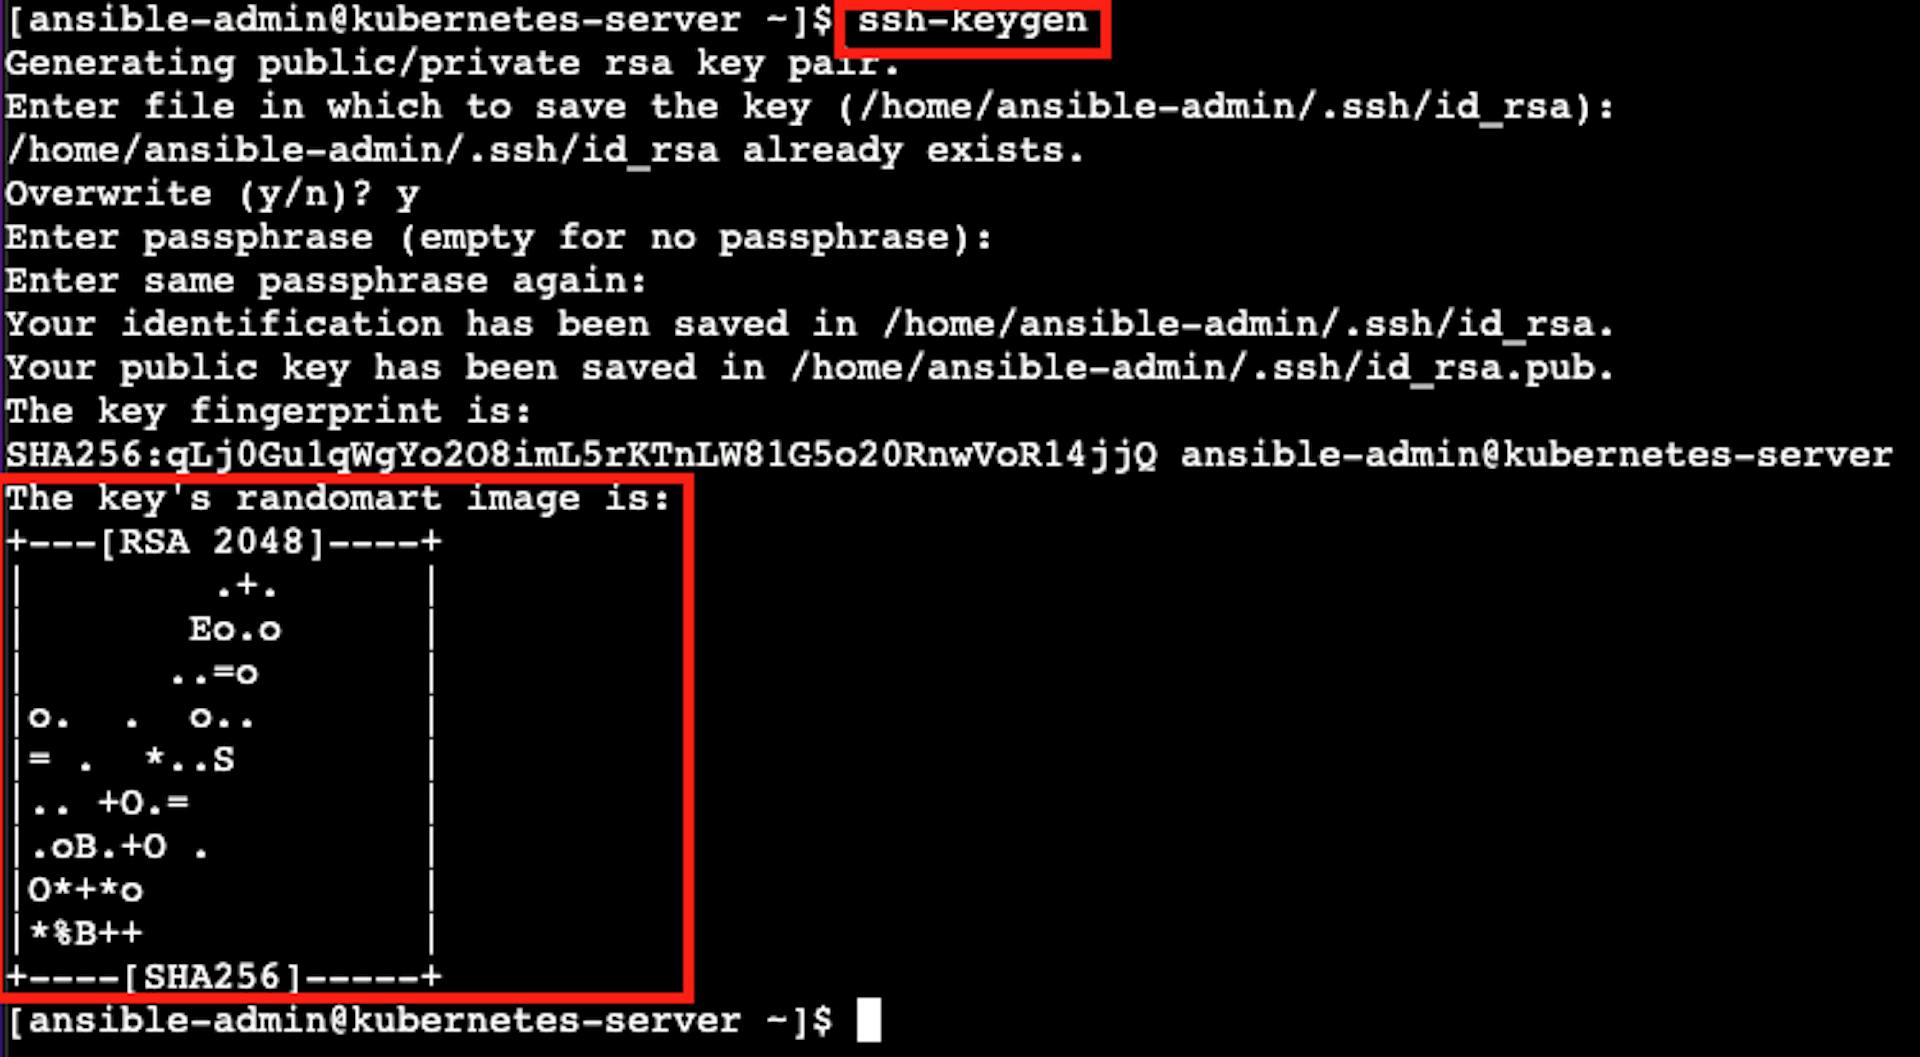 Снимок экрана терминала экземпляра виртуального сервера AWS EC2 с указателем на результат ssh-keygen.